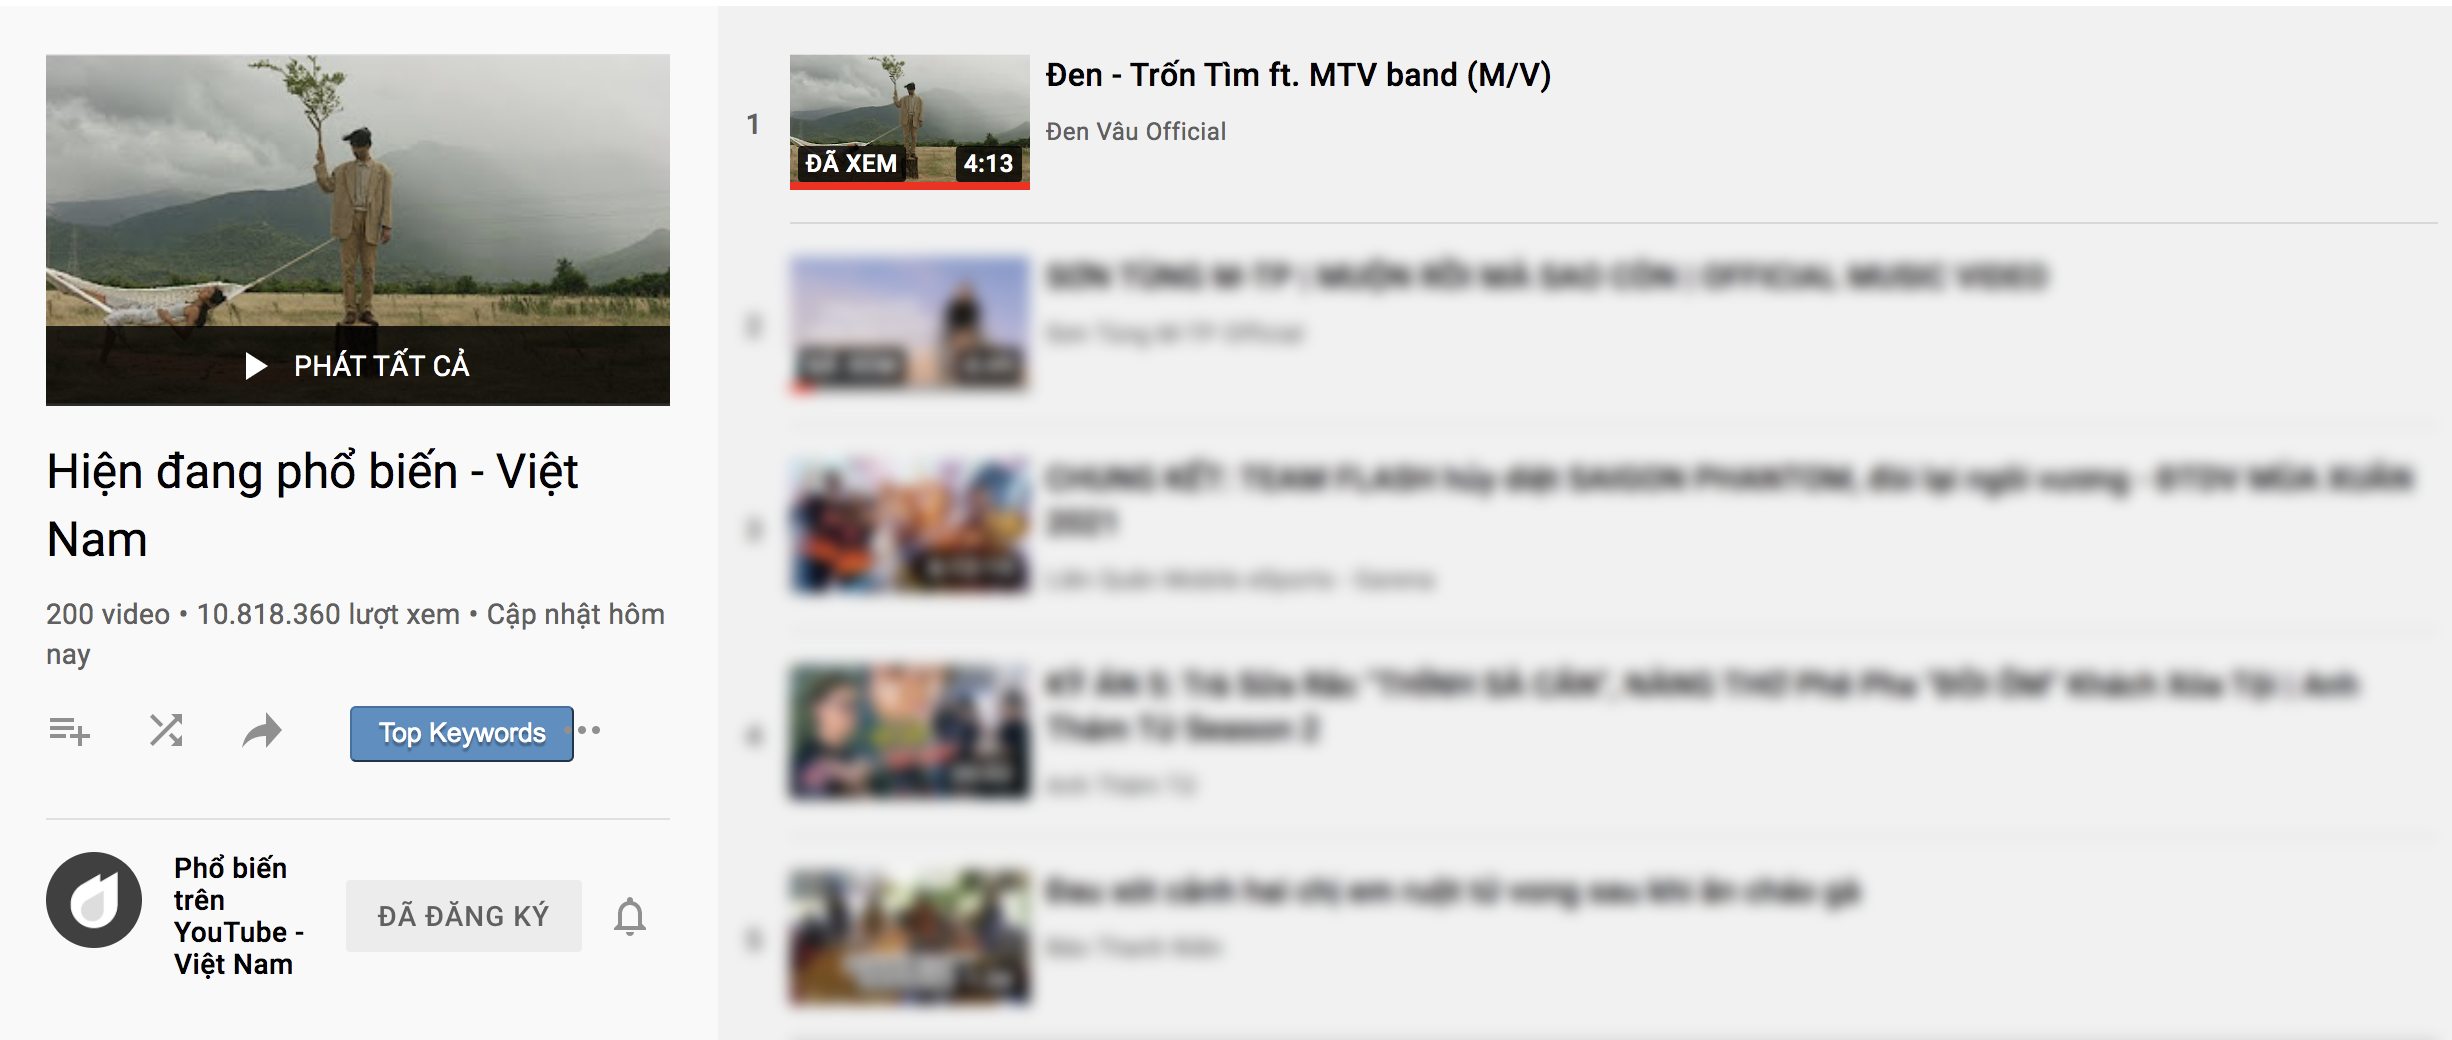 MV Trốn Tìm giúp Đen Vâu đạt kỷ lục 11 MV top 1 trending Youtube